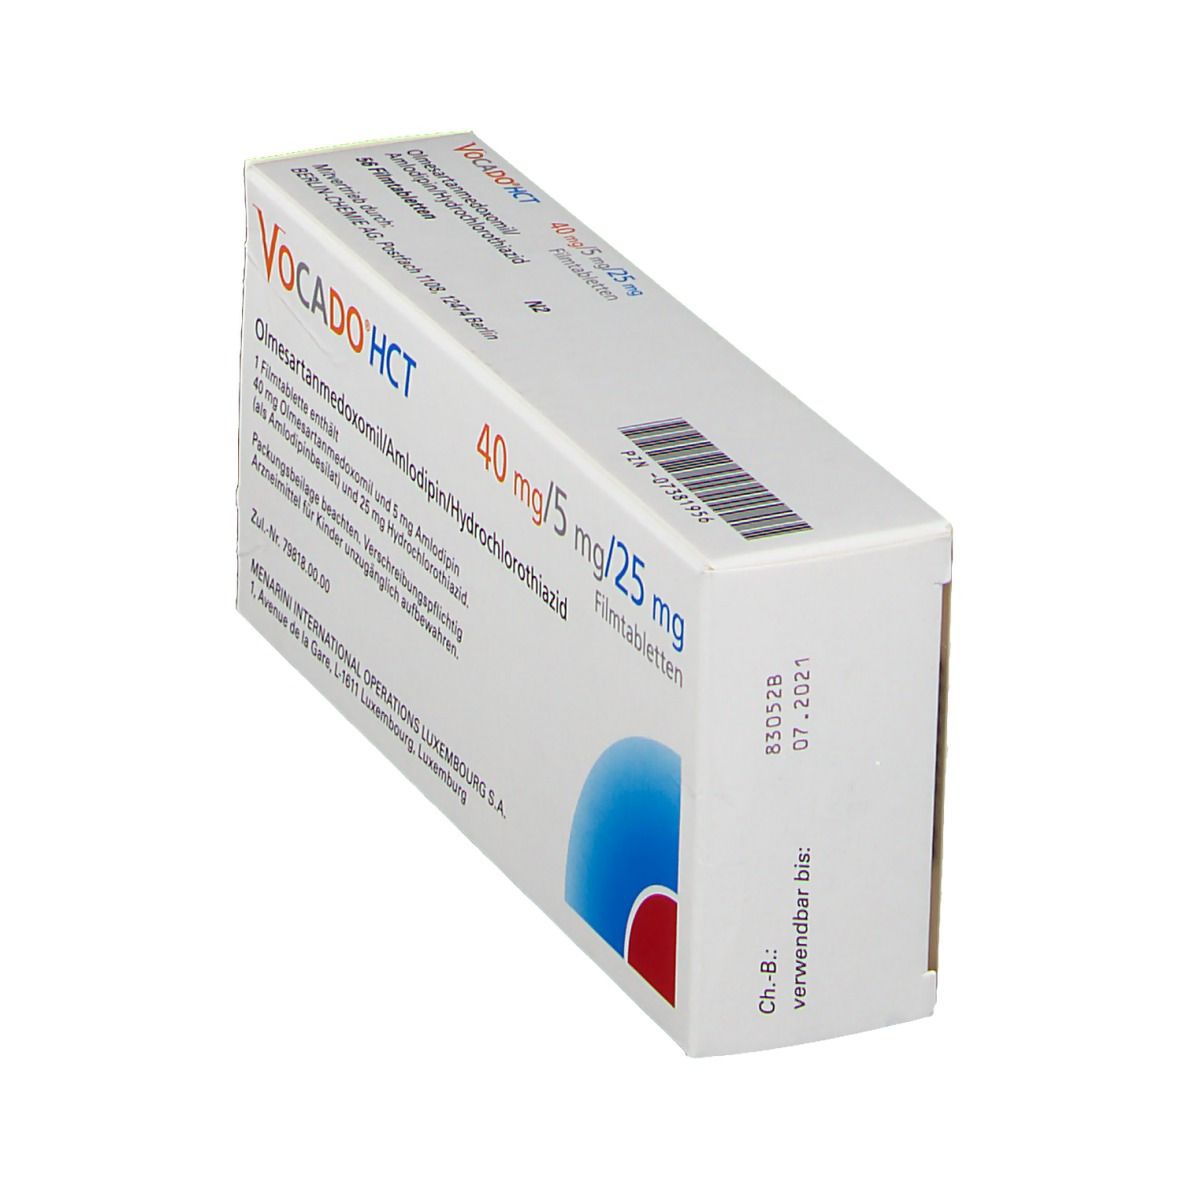 Vocado®HCT 40 mg/5 mg/25 mg